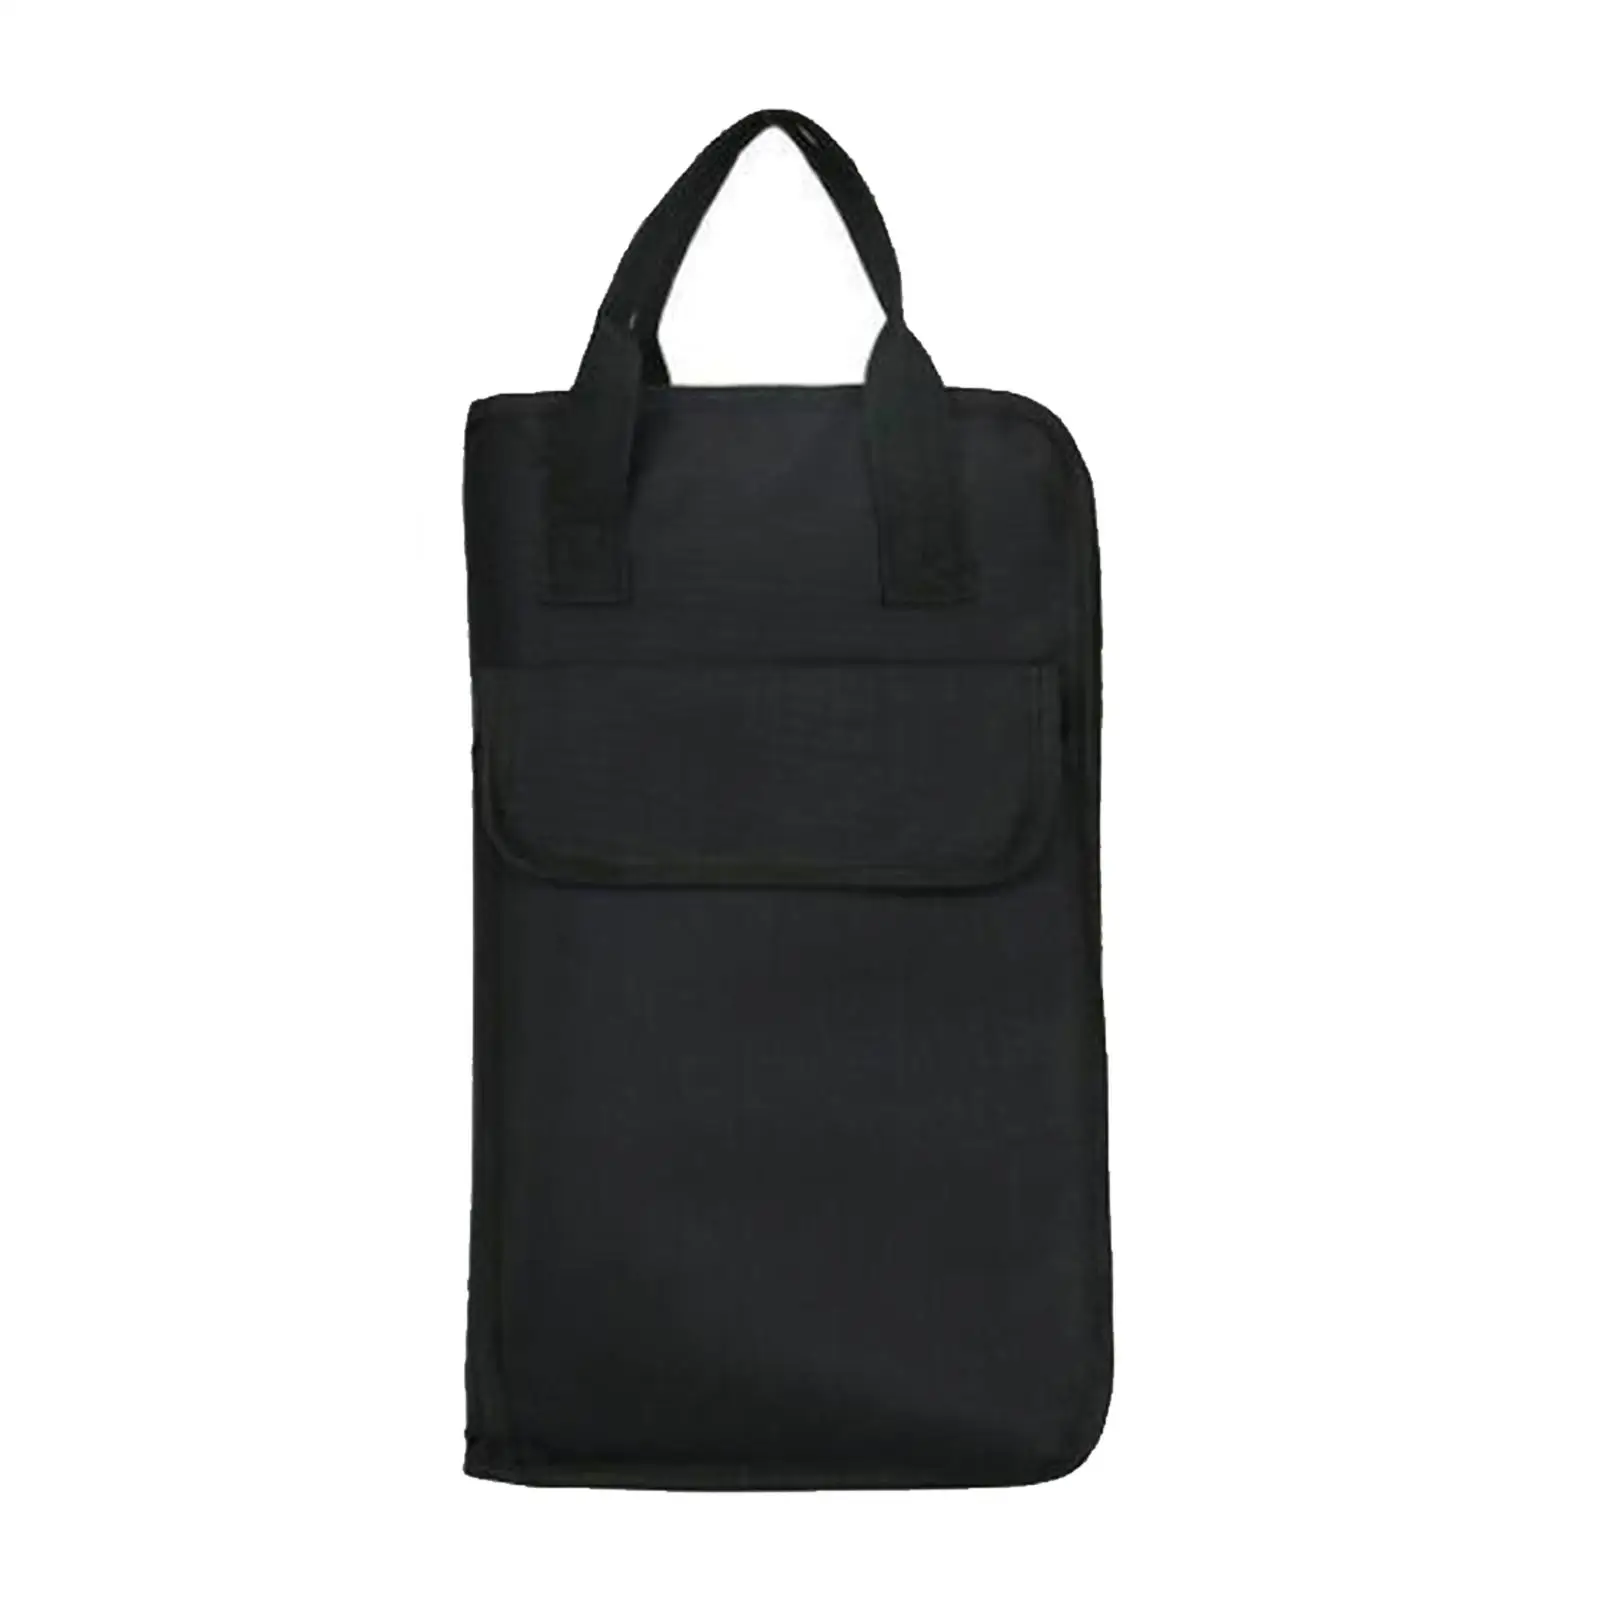 Drumstick Bag Mallet Bag Large Capacity Drum Stick Gig Bag for Beginners